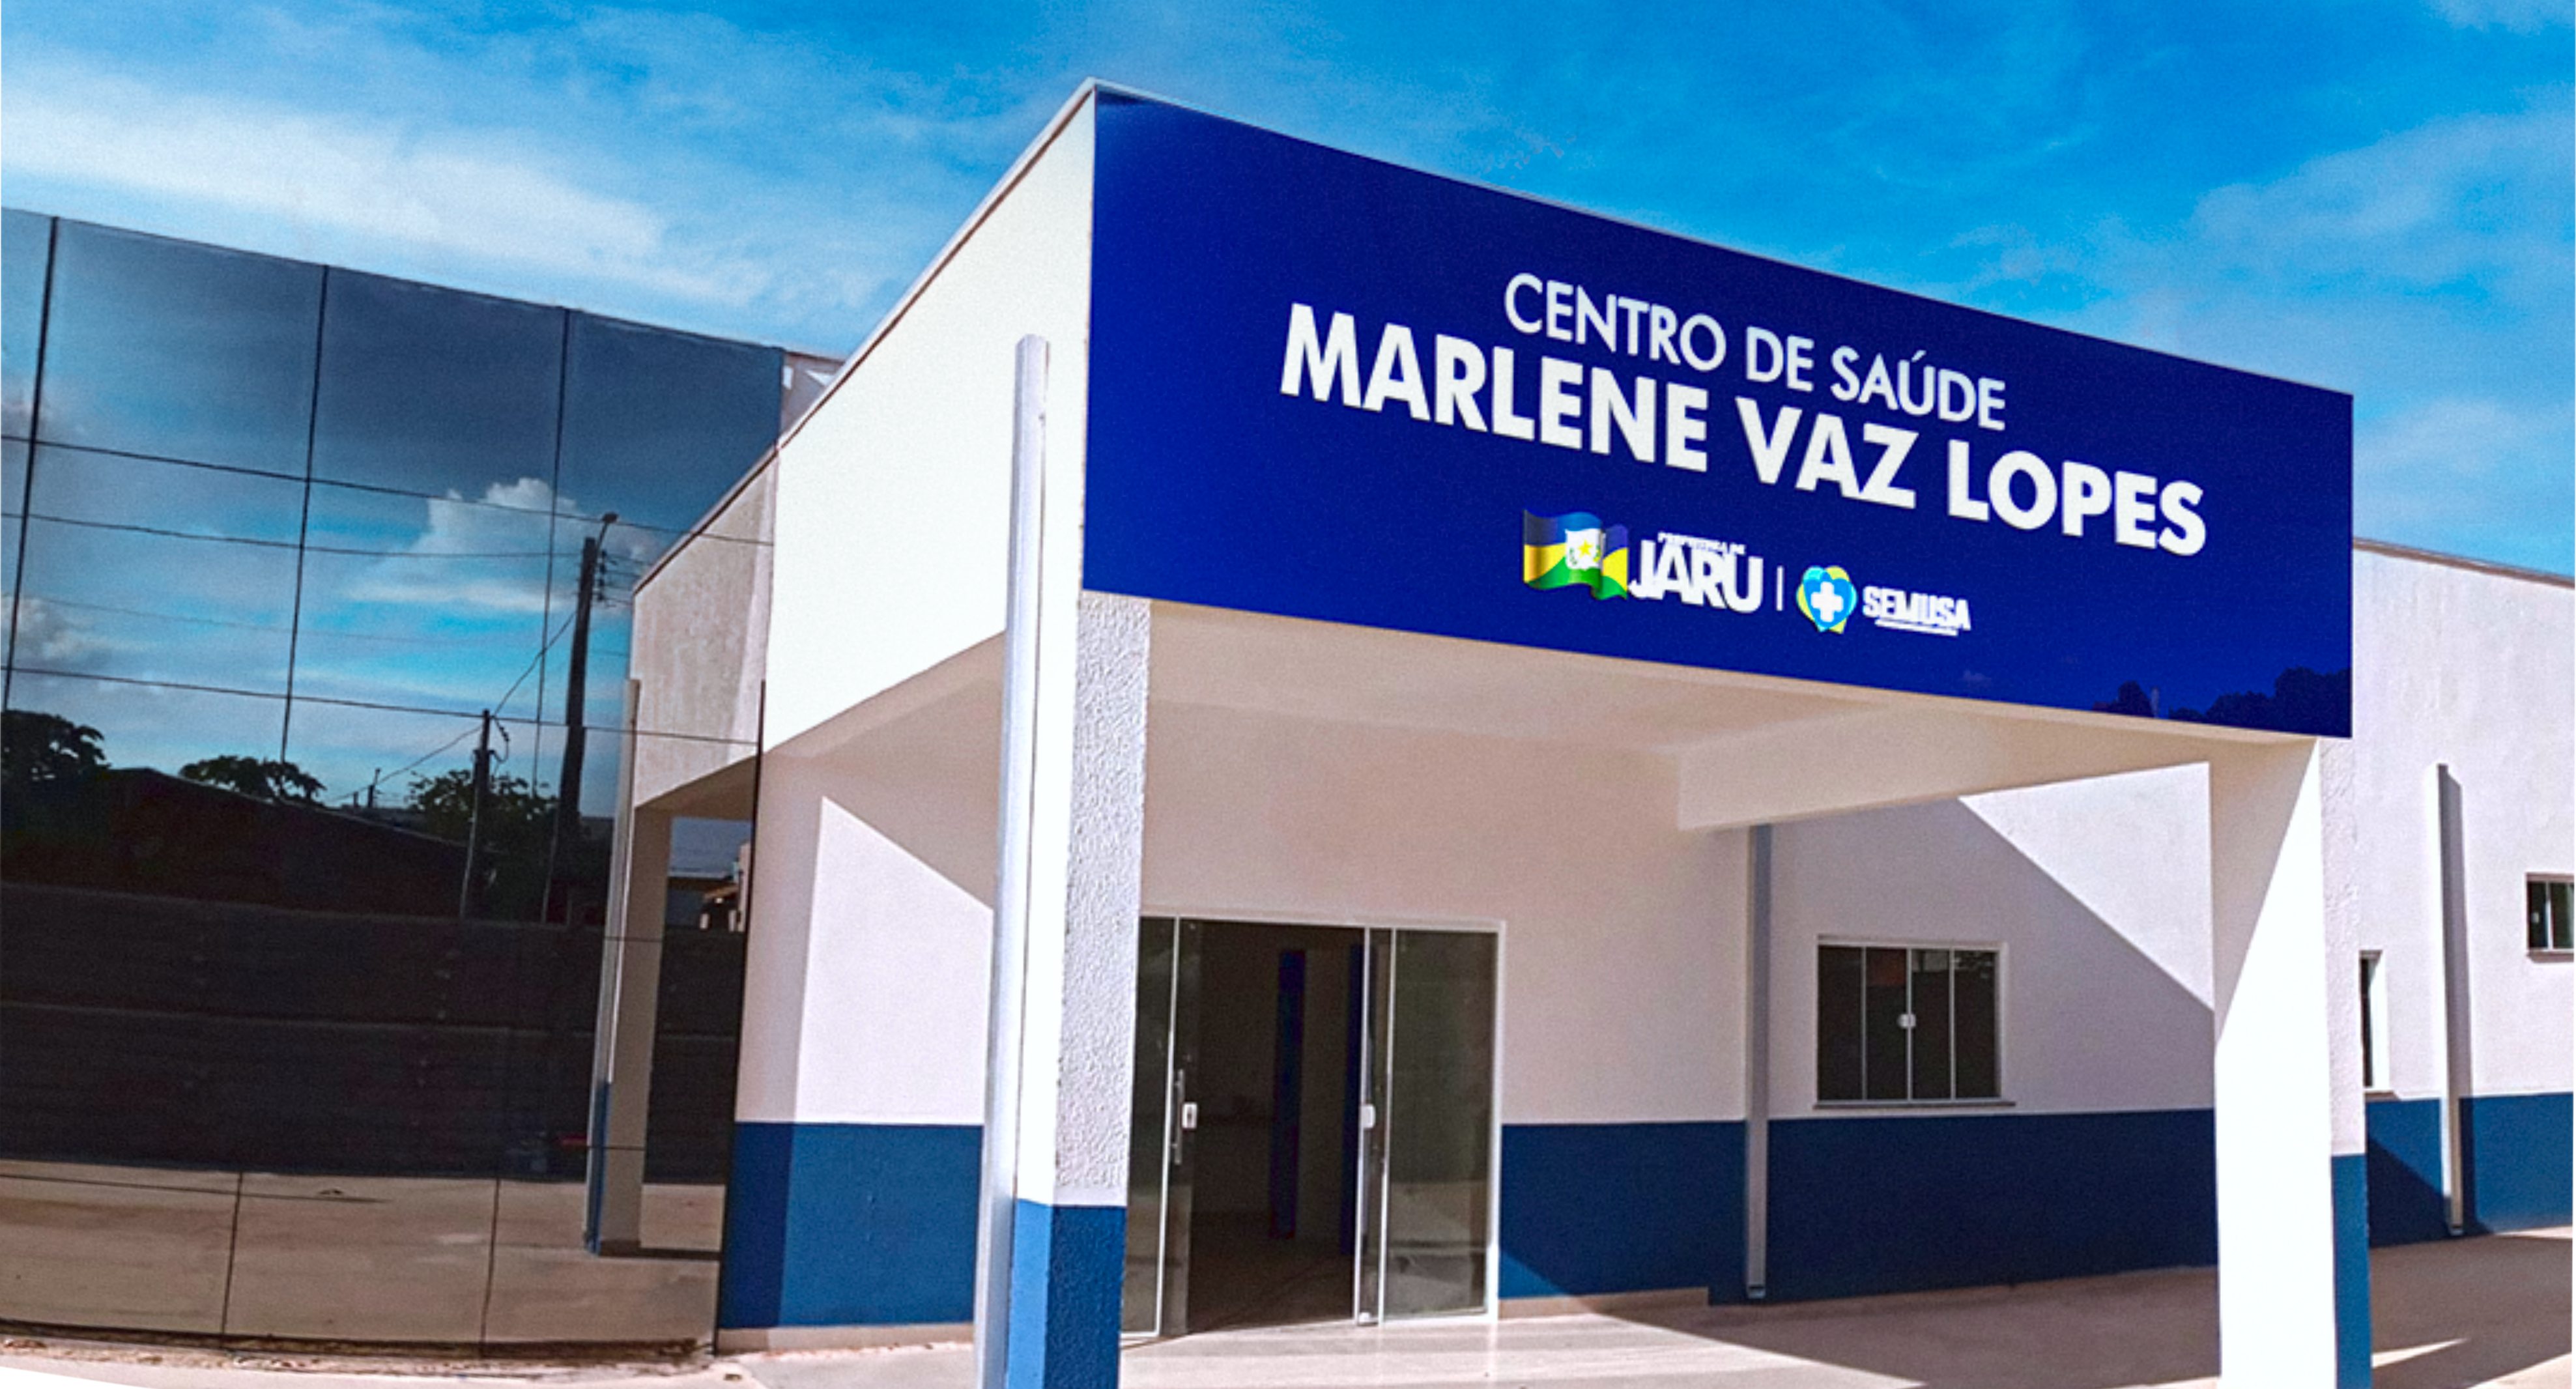 Inauguração do Centro de Saúde Marlene Vaz Lopes no bairro Morumbi será nesta quarta-feira